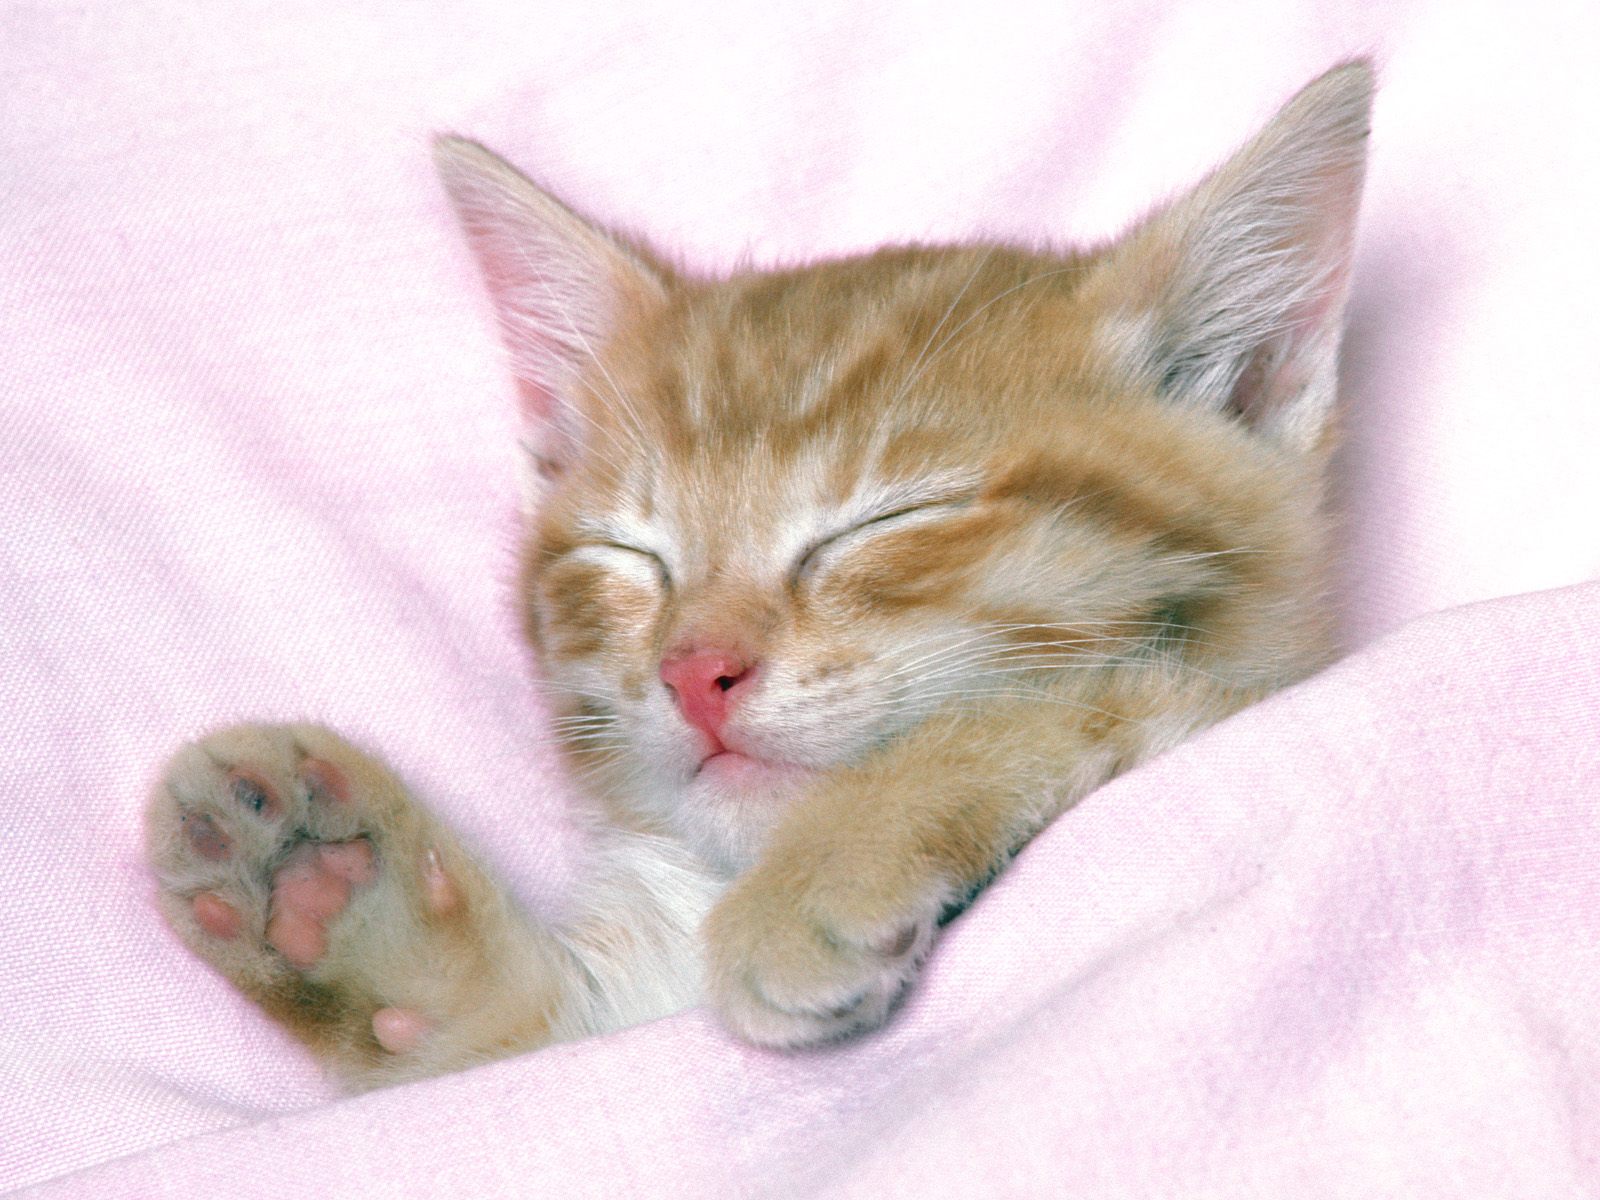 https://blogger.googleusercontent.com/img/b/R29vZ2xl/AVvXsEhA2RAnb_naY2VLISwoLu60xofWqRyCclNUBQEfDf3DQQPAqBnCTwiOVq9zlZlNGQx3toTWB33cUxRIn8Ht6S4A527NKCITLWDMNnbf8fxVTErFM4bSpic25pbFFHoSqSrHk8vyMGqejCqn/s1600/Sleeping-Cat-Wallpapers-HD.jpg